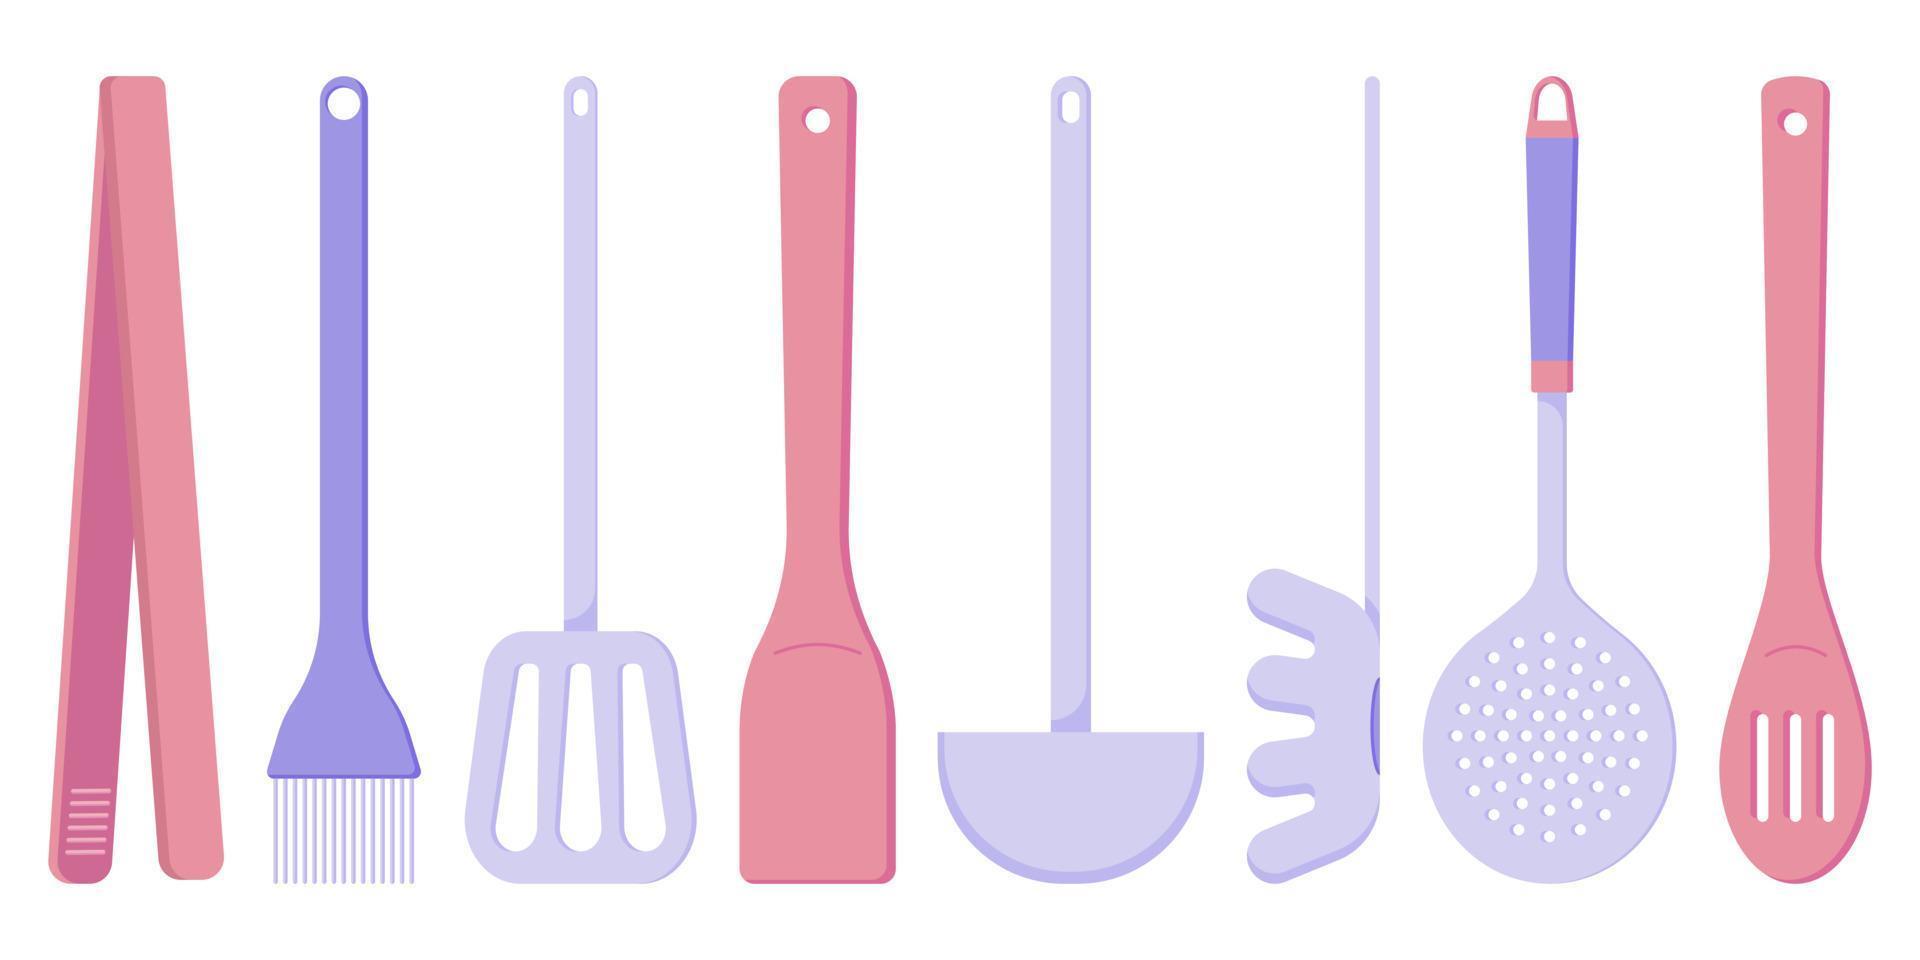 ensemble d'appareils de cuisine pour cuisiner, une cuillère, une écumoire, une spatule en bois, une louche, des pinces de cuisine, une brosse à grill, une cuillère à spaghetti, une illustration de style plat vecteur